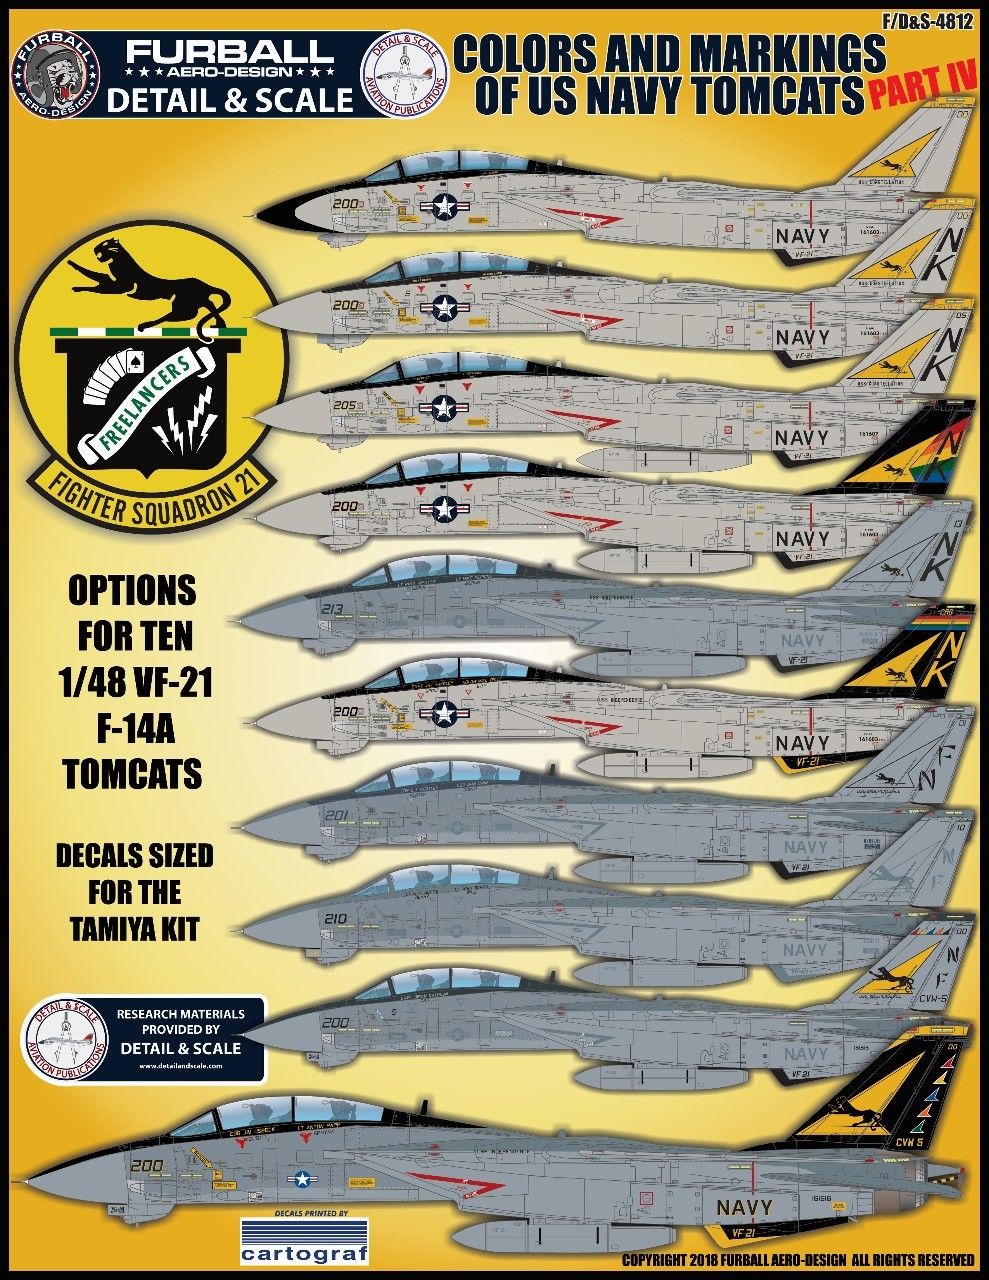 1/48 F-14A 雄猫战斗机"色彩与标记"(4) - 点击图像关闭